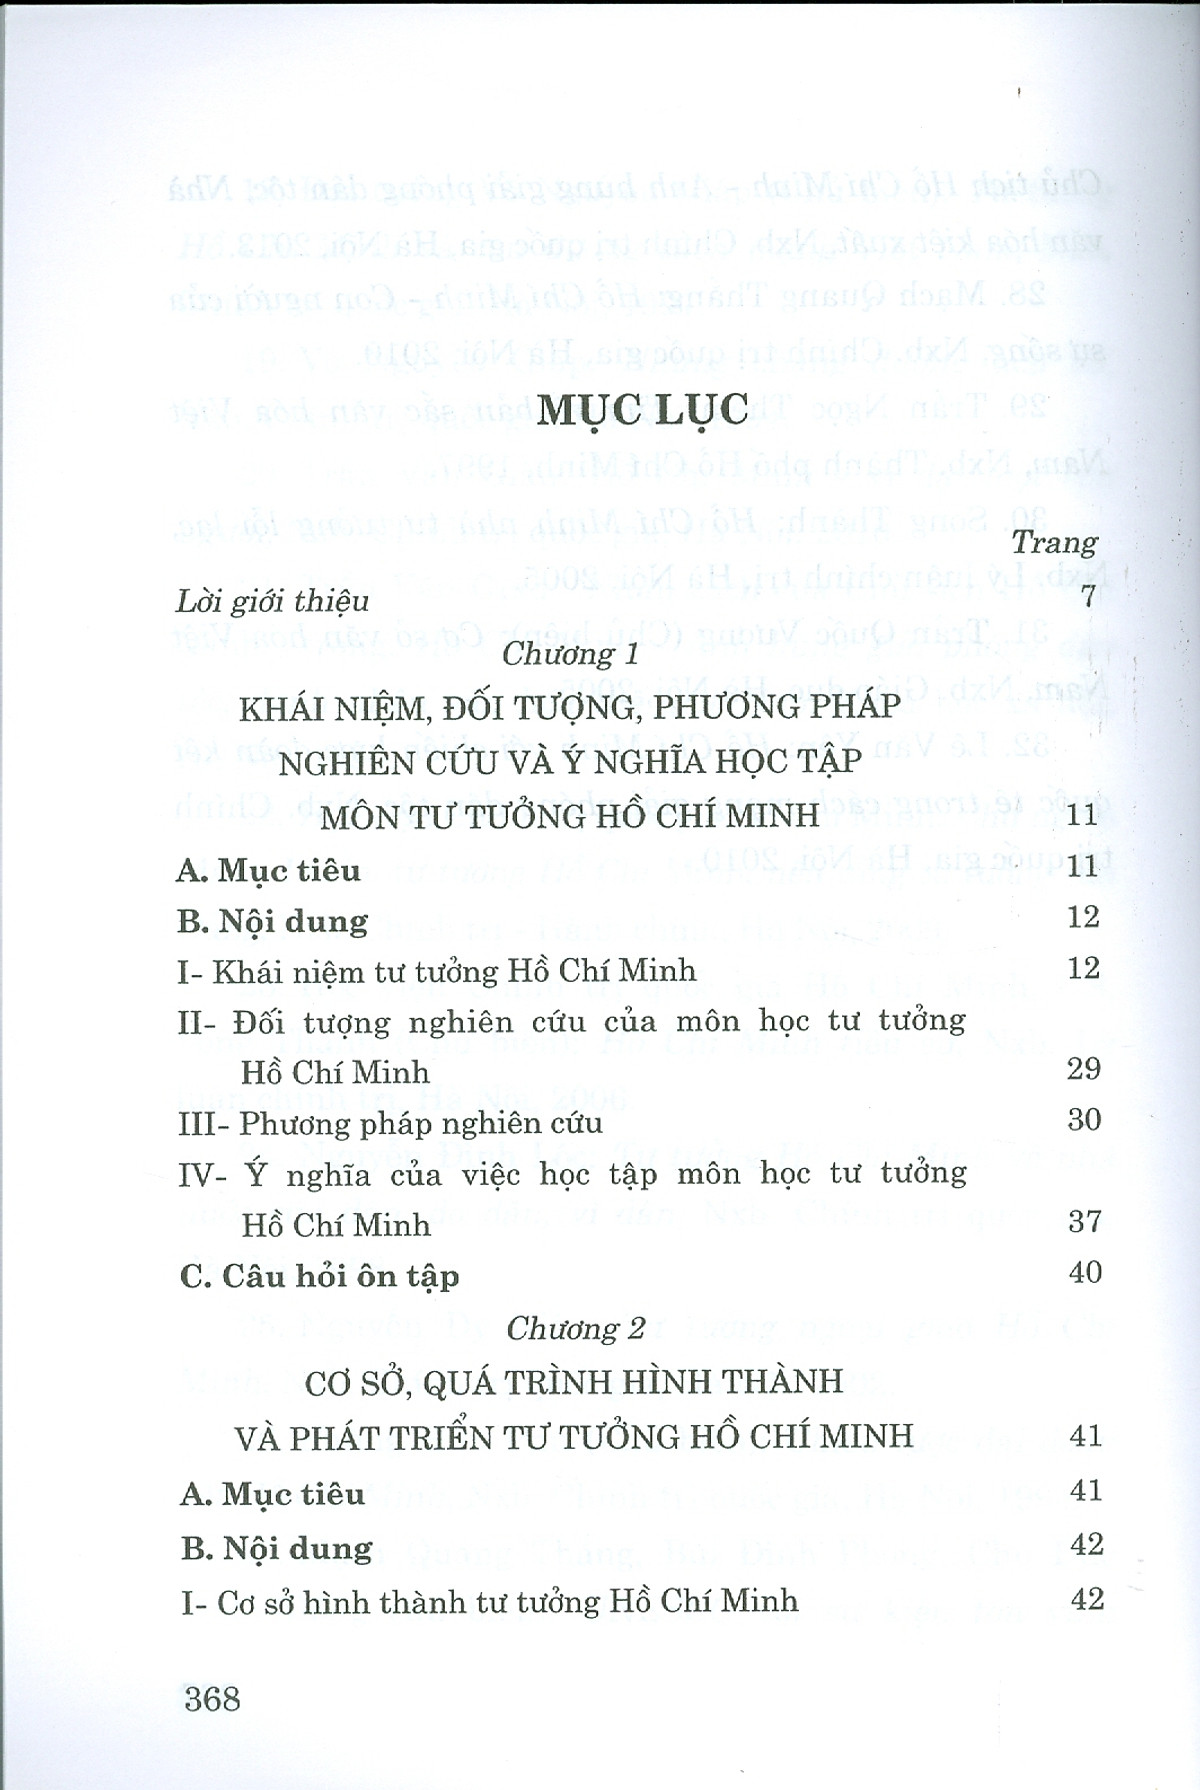 Combo 2 cuốn Giáo Trình Triết Học Mác – Lênin + Giáo Trình Tư Tưởng Hồ Chí Minh (Dành Cho Bậc Đại Học HỆ CHUYÊN Lý Luận Chính Trị)